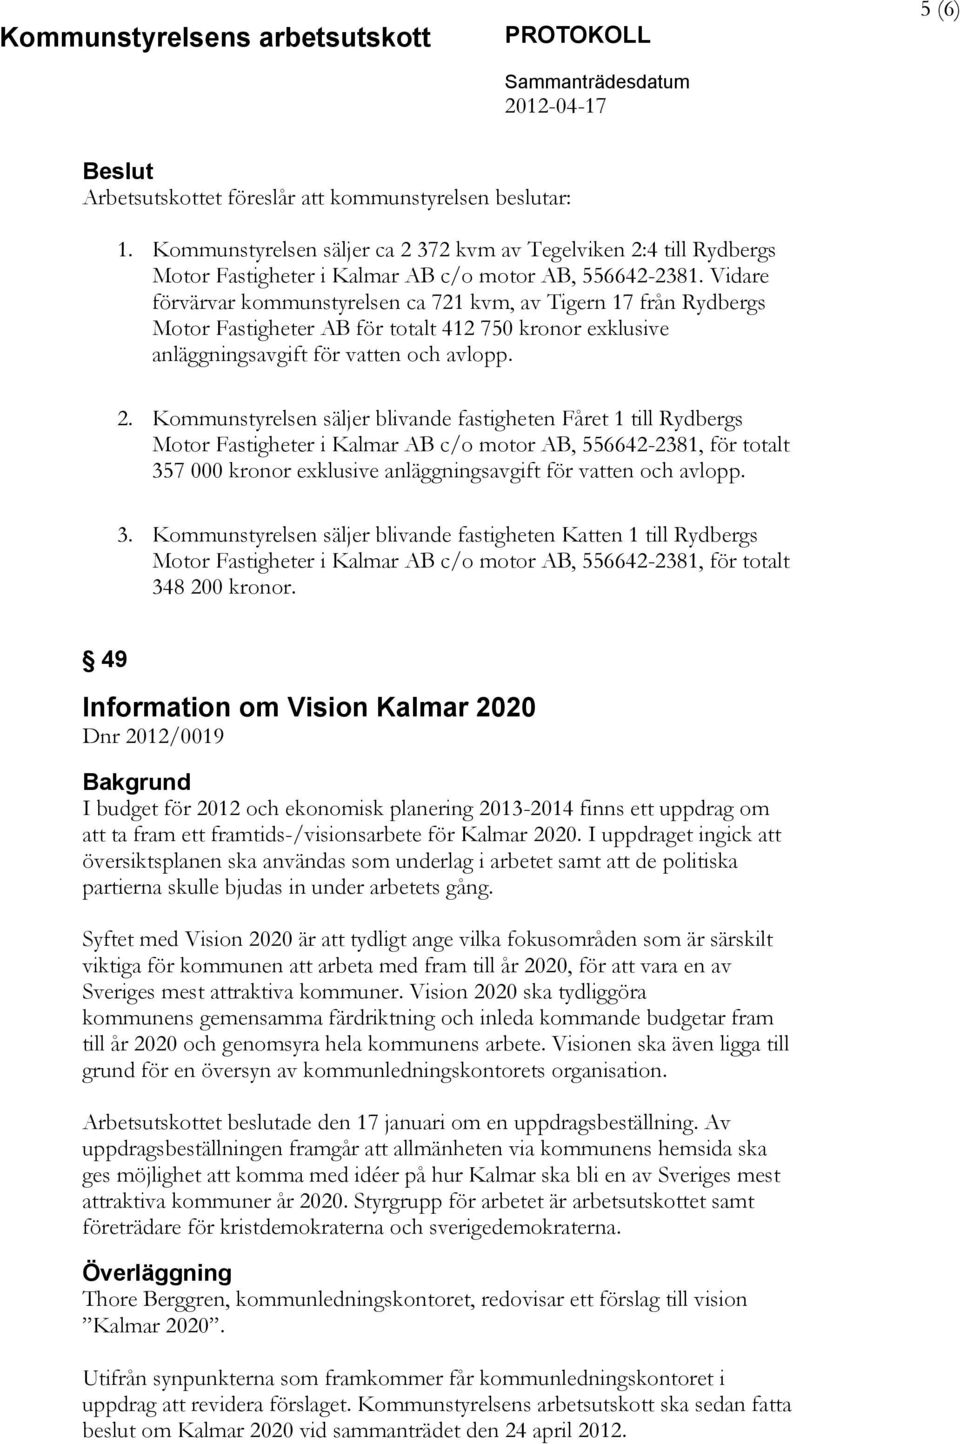 Kommunstyrelsen säljer blivande fastigheten Fåret 1 till Rydbergs Motor Fastigheter i Kalmar AB c/o motor AB, 556642-2381, för totalt 357 000 kronor exklusive anläggningsavgift för vatten och avlopp.